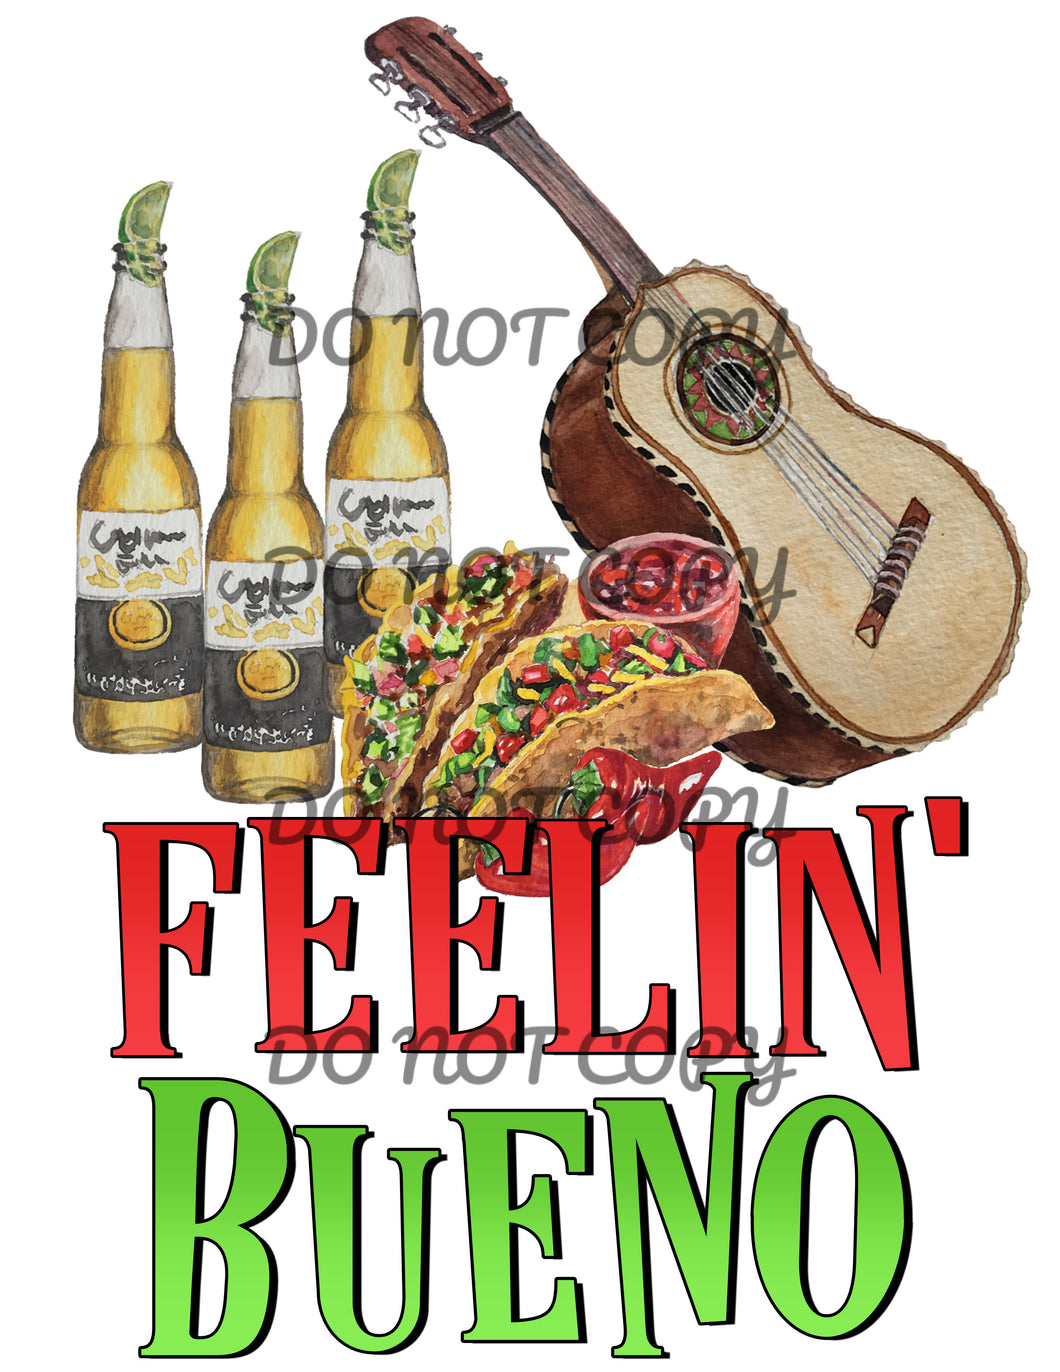 Feelin Bueno Beer Tacos Guitar Sublimation Transfer